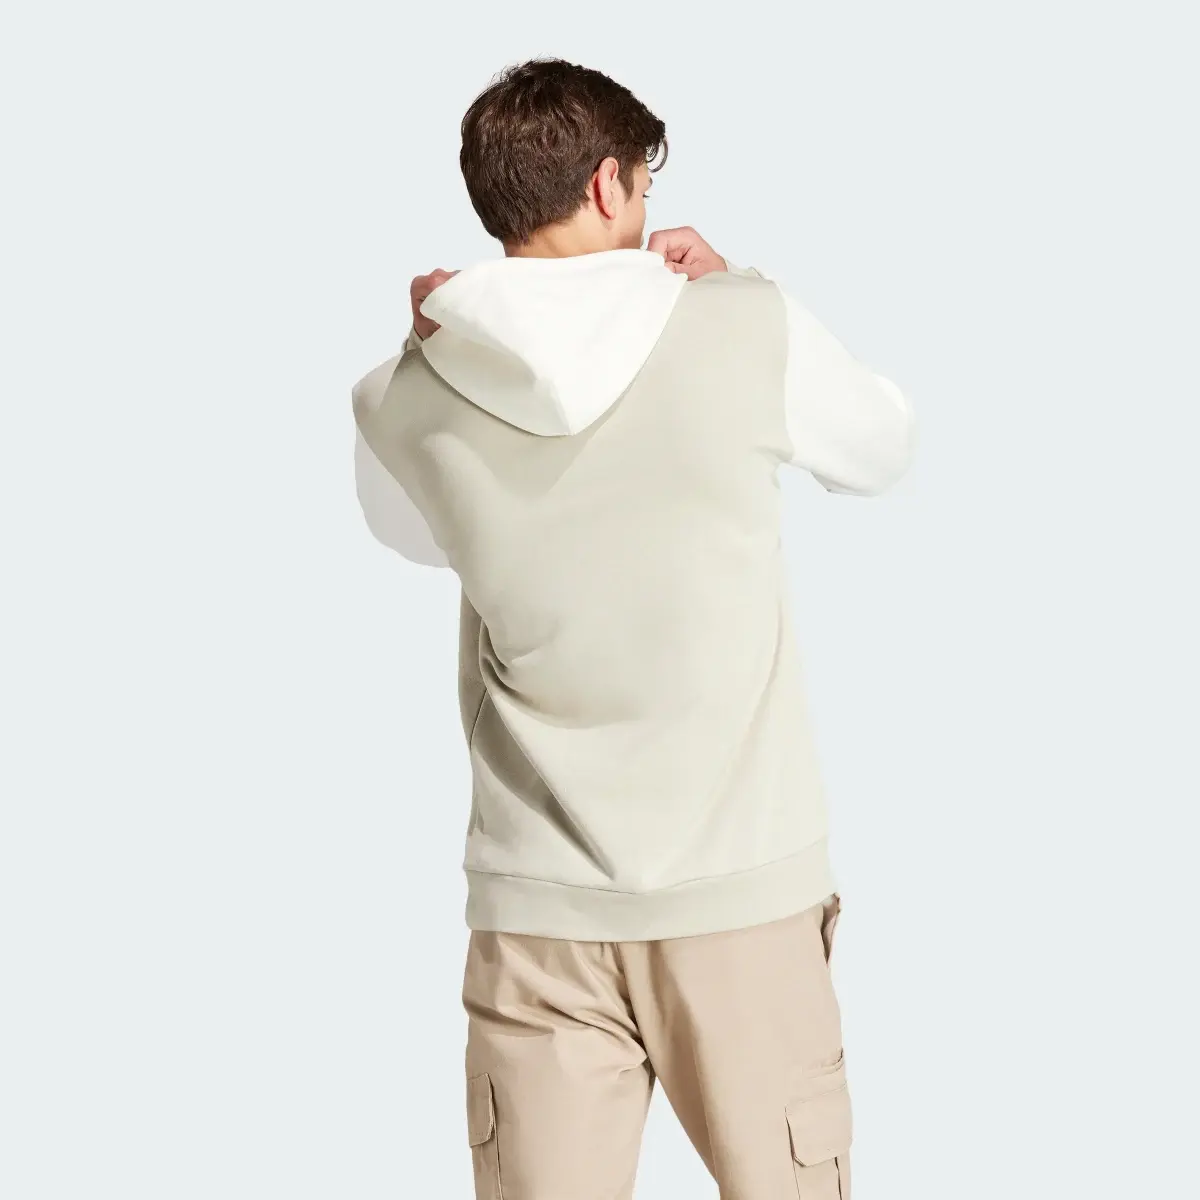 Adidas Camisola com Capuz em Fleece Essentials. 3